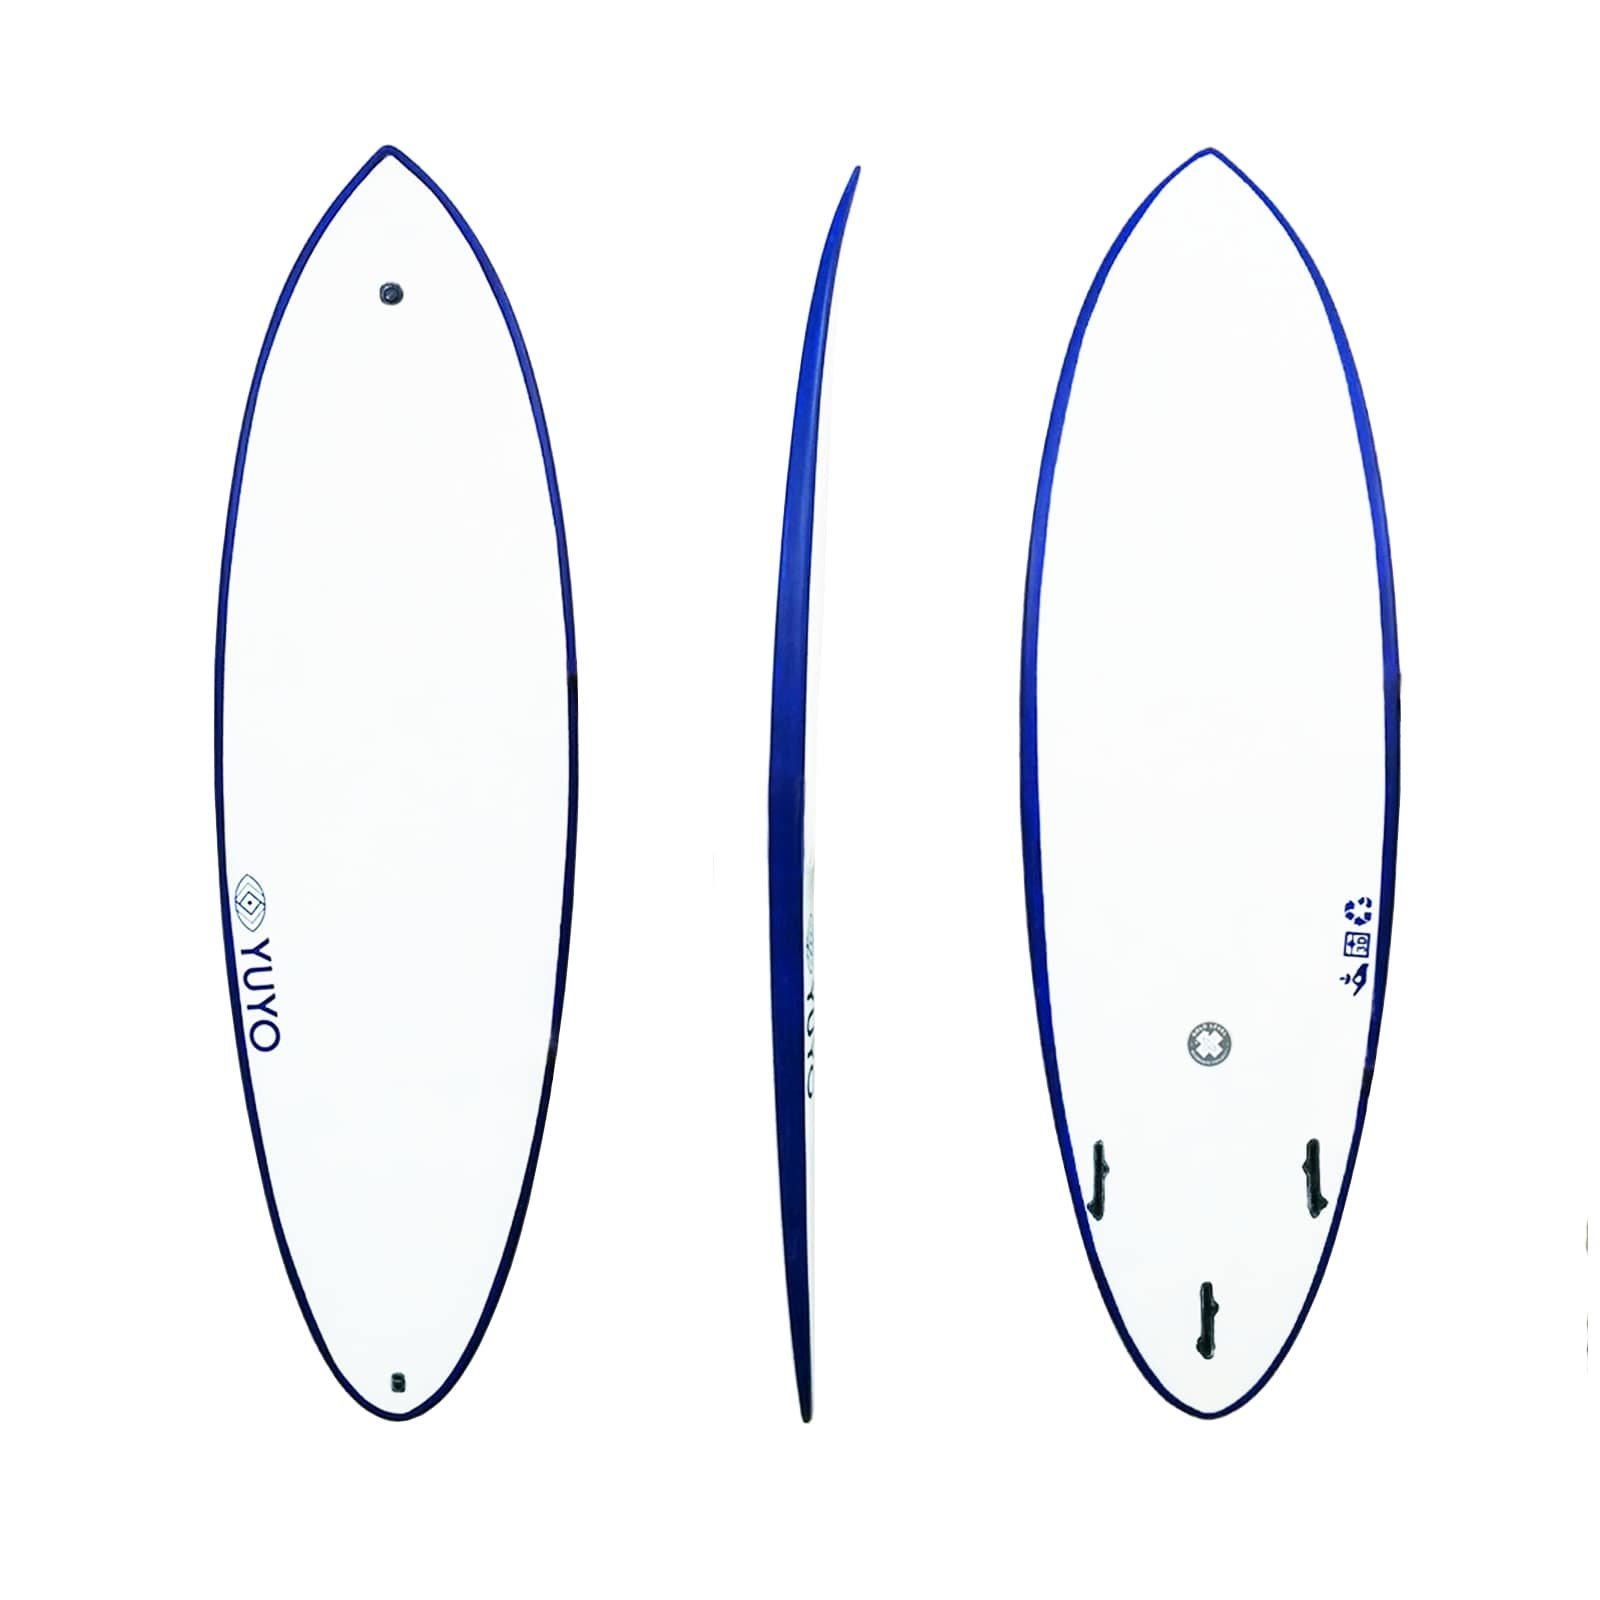 Surf ecoboard Saint pierre 5'8 hybride